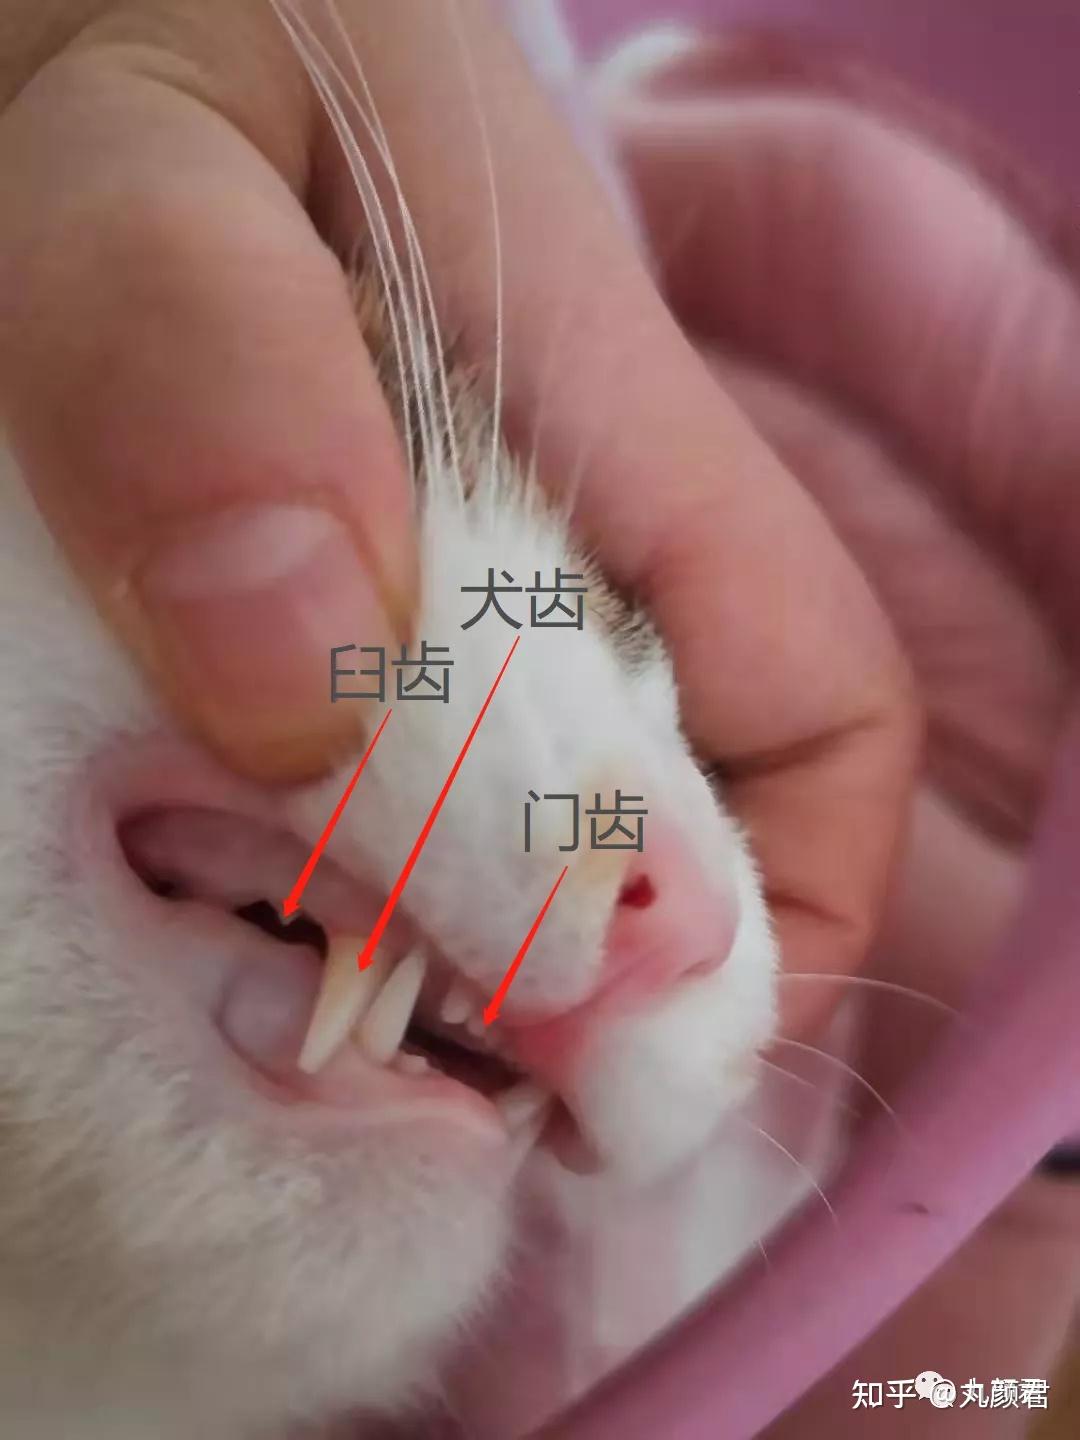 猫有多少颗牙? - 知乎